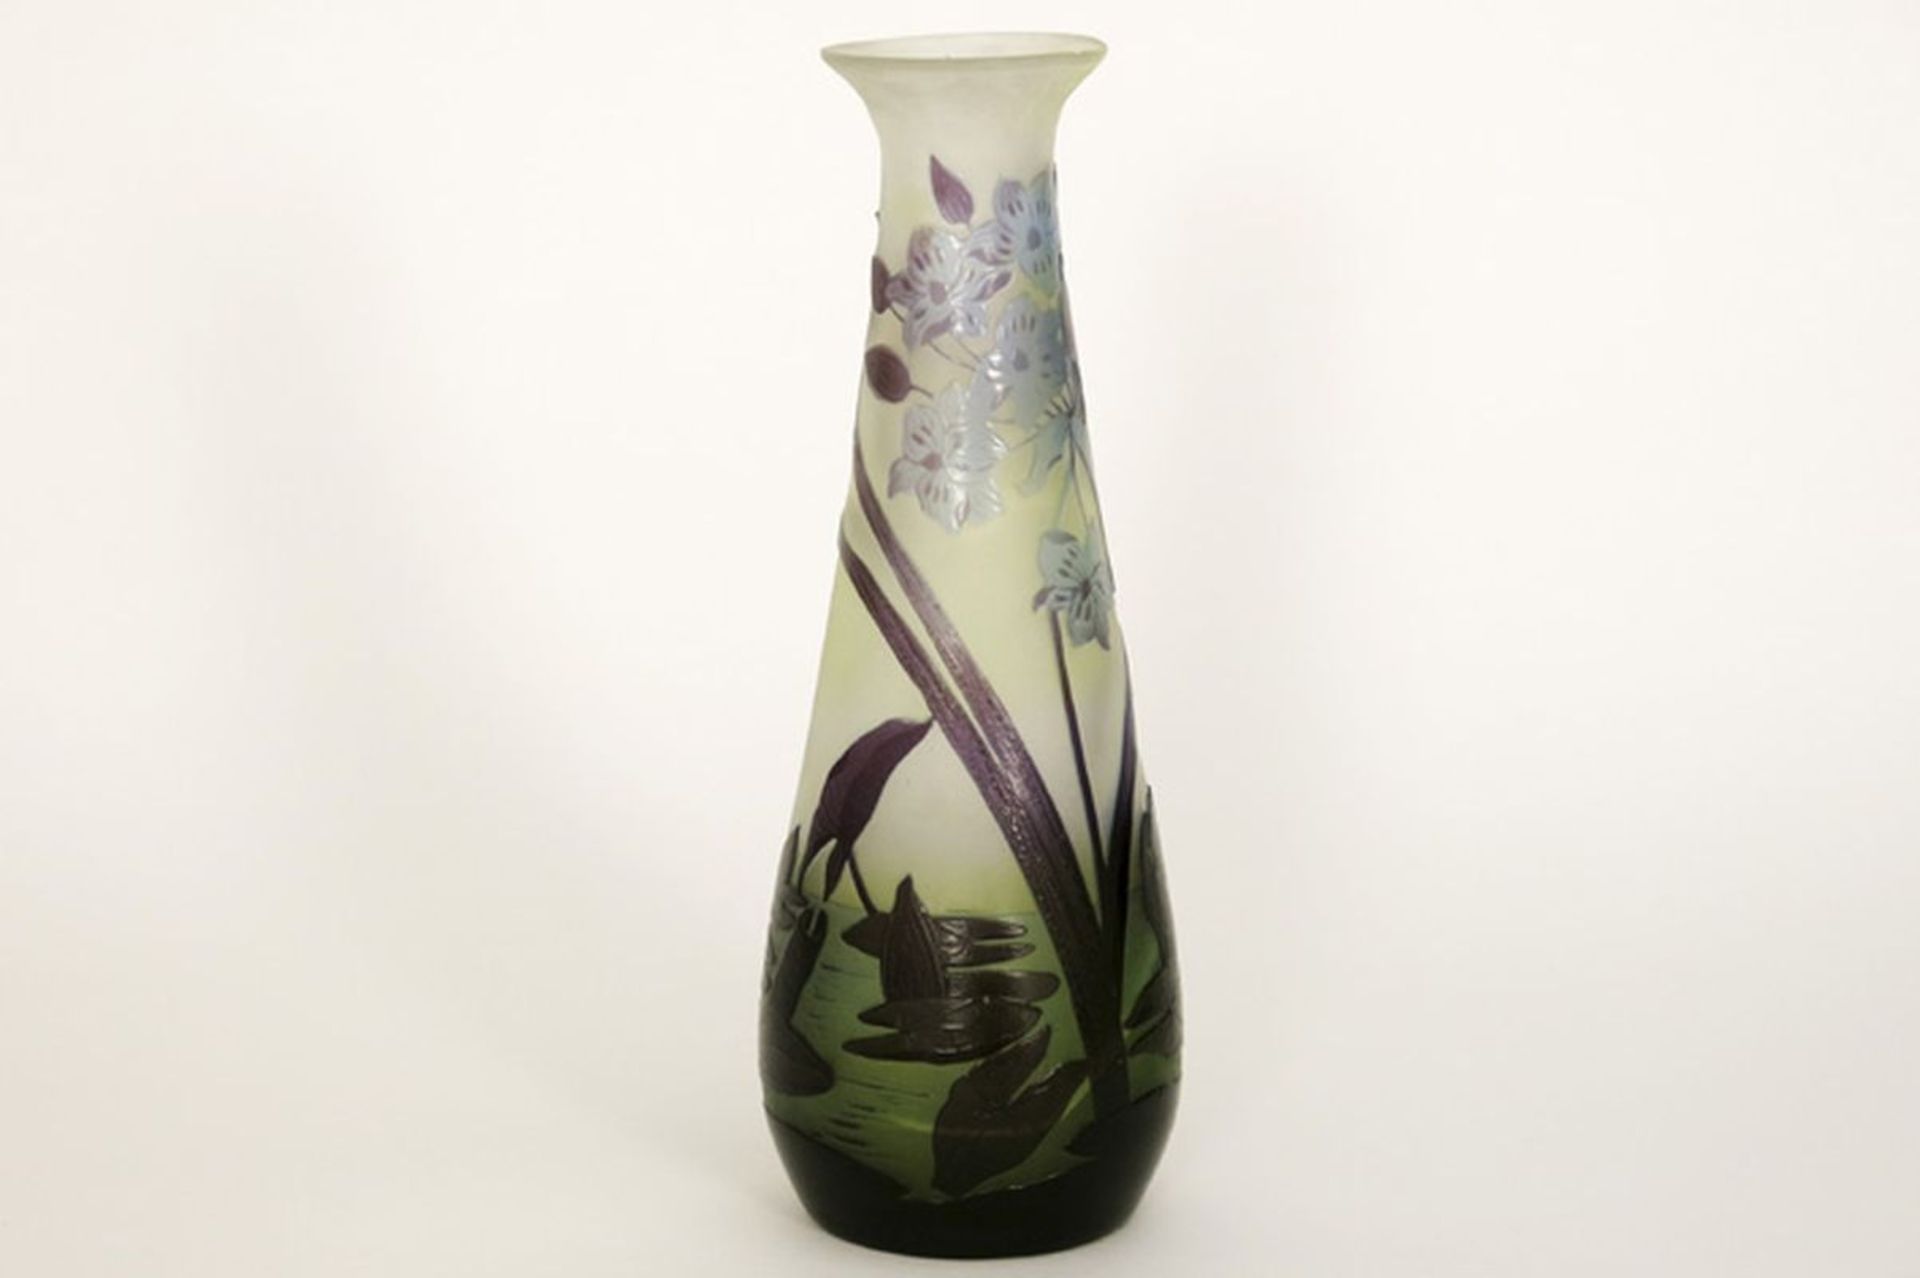 GALLÉ kleine Art Nouveau-vaas in meerlagige cameo-glaspasta met een floraal decor - [...] - Bild 3 aus 4